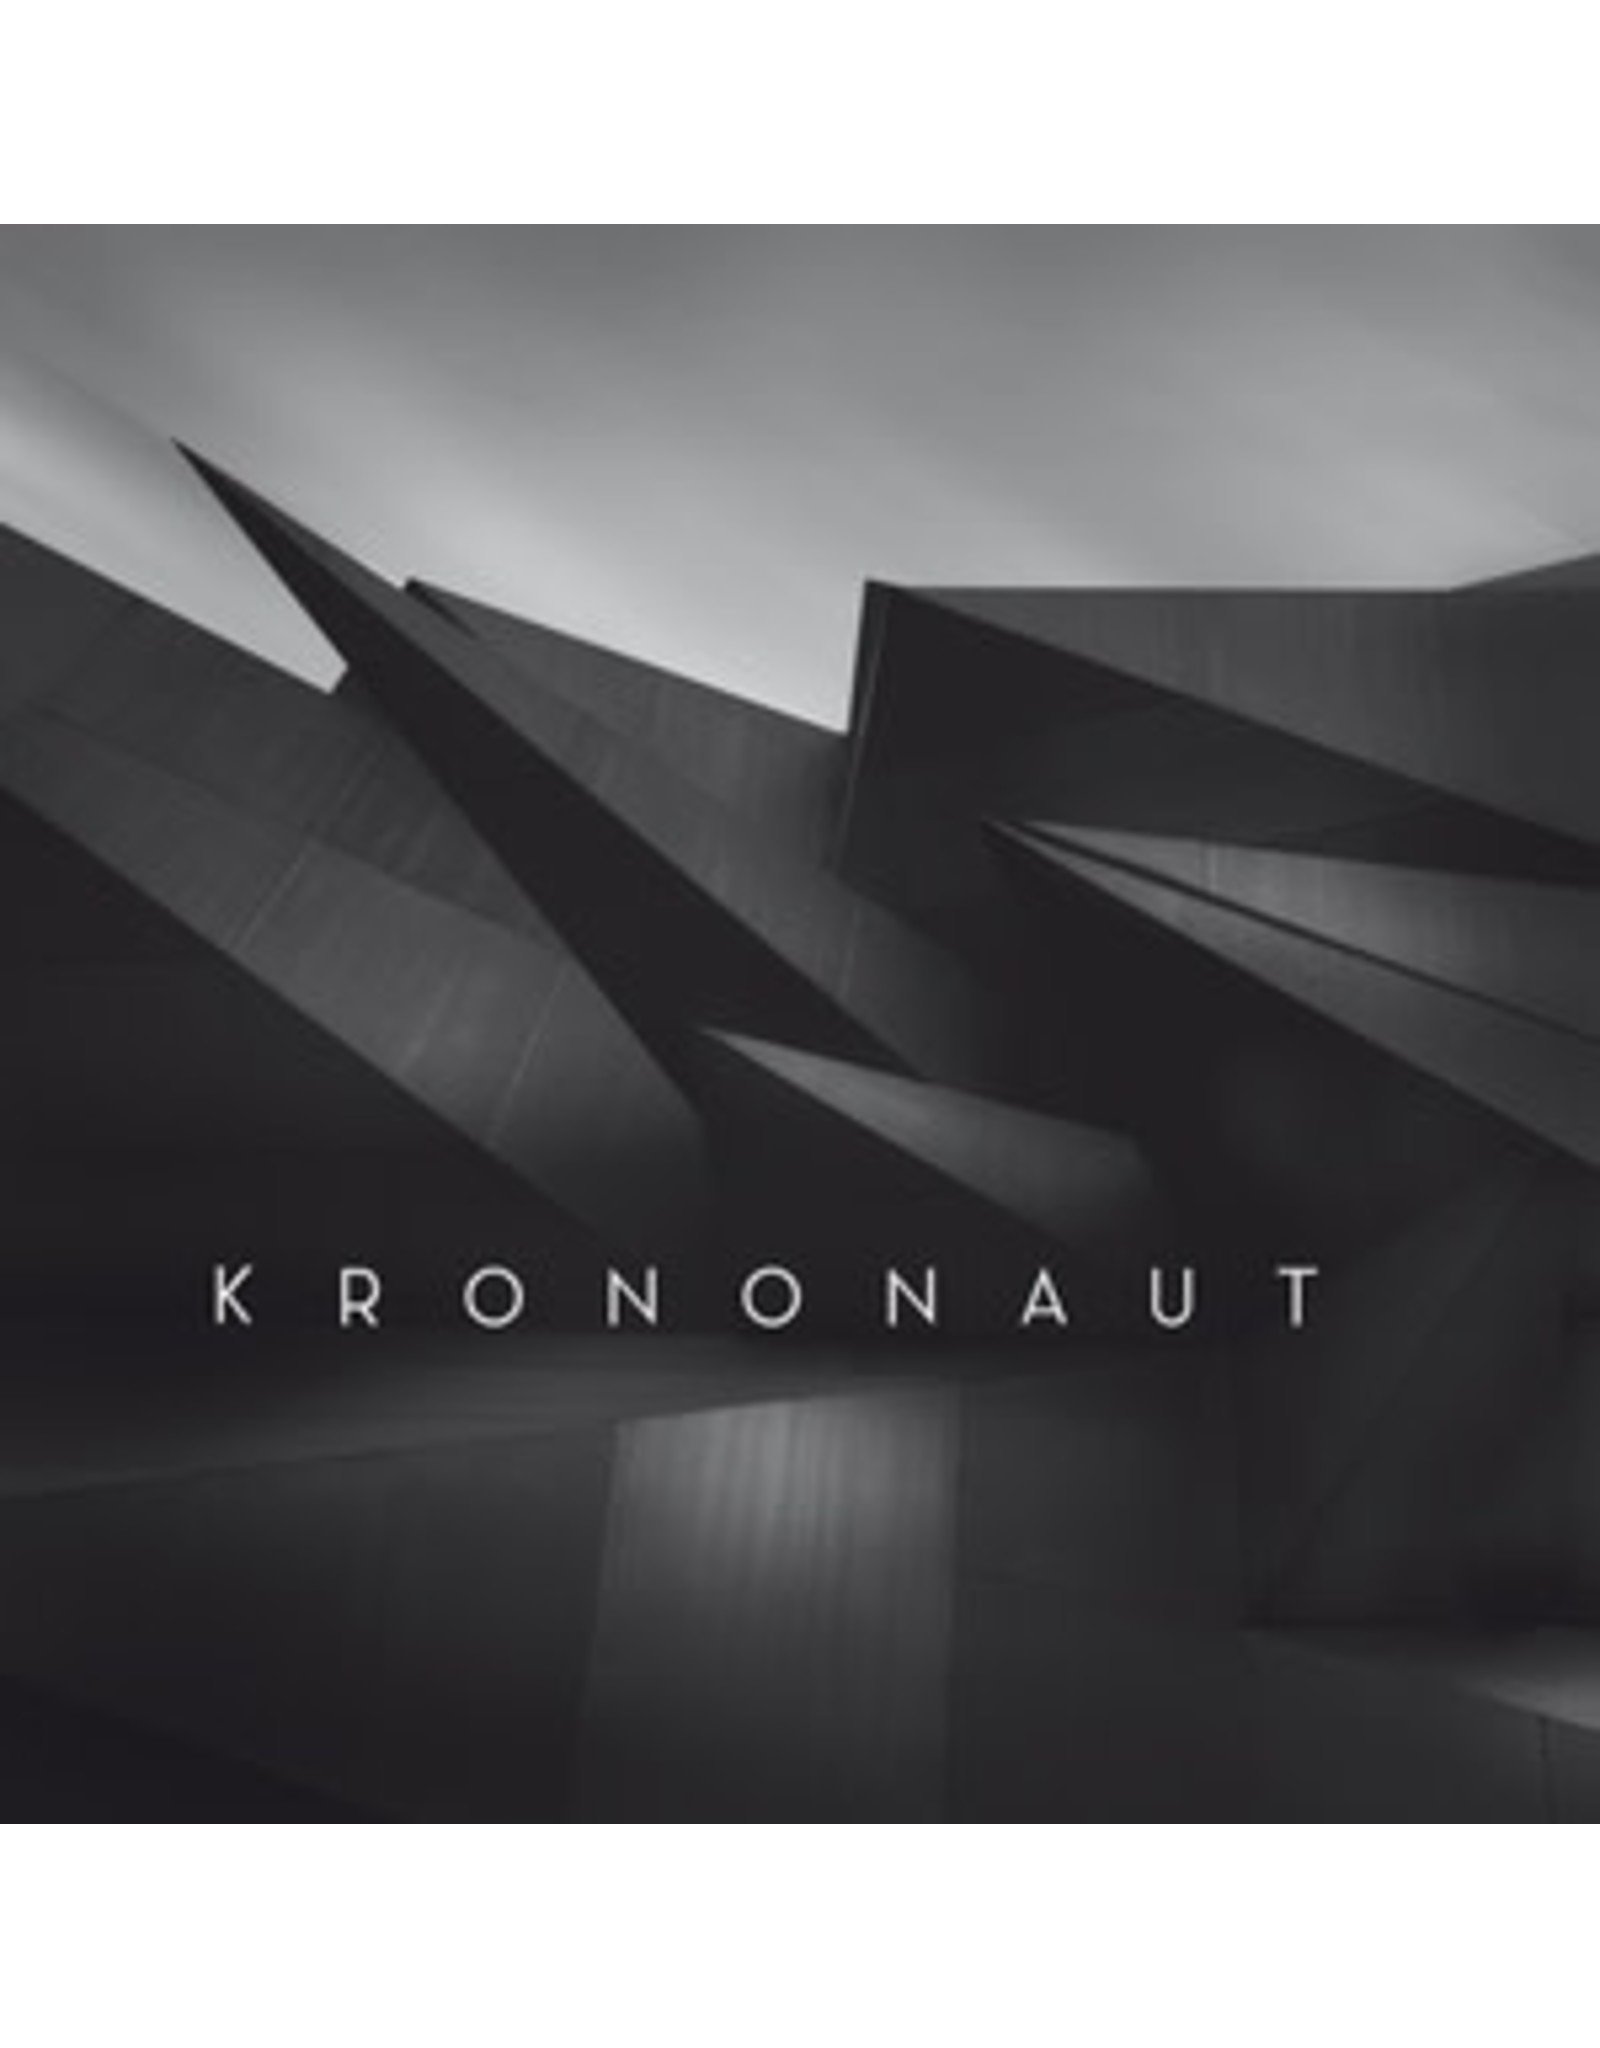 New Vinyl Krononaut - S/T LP